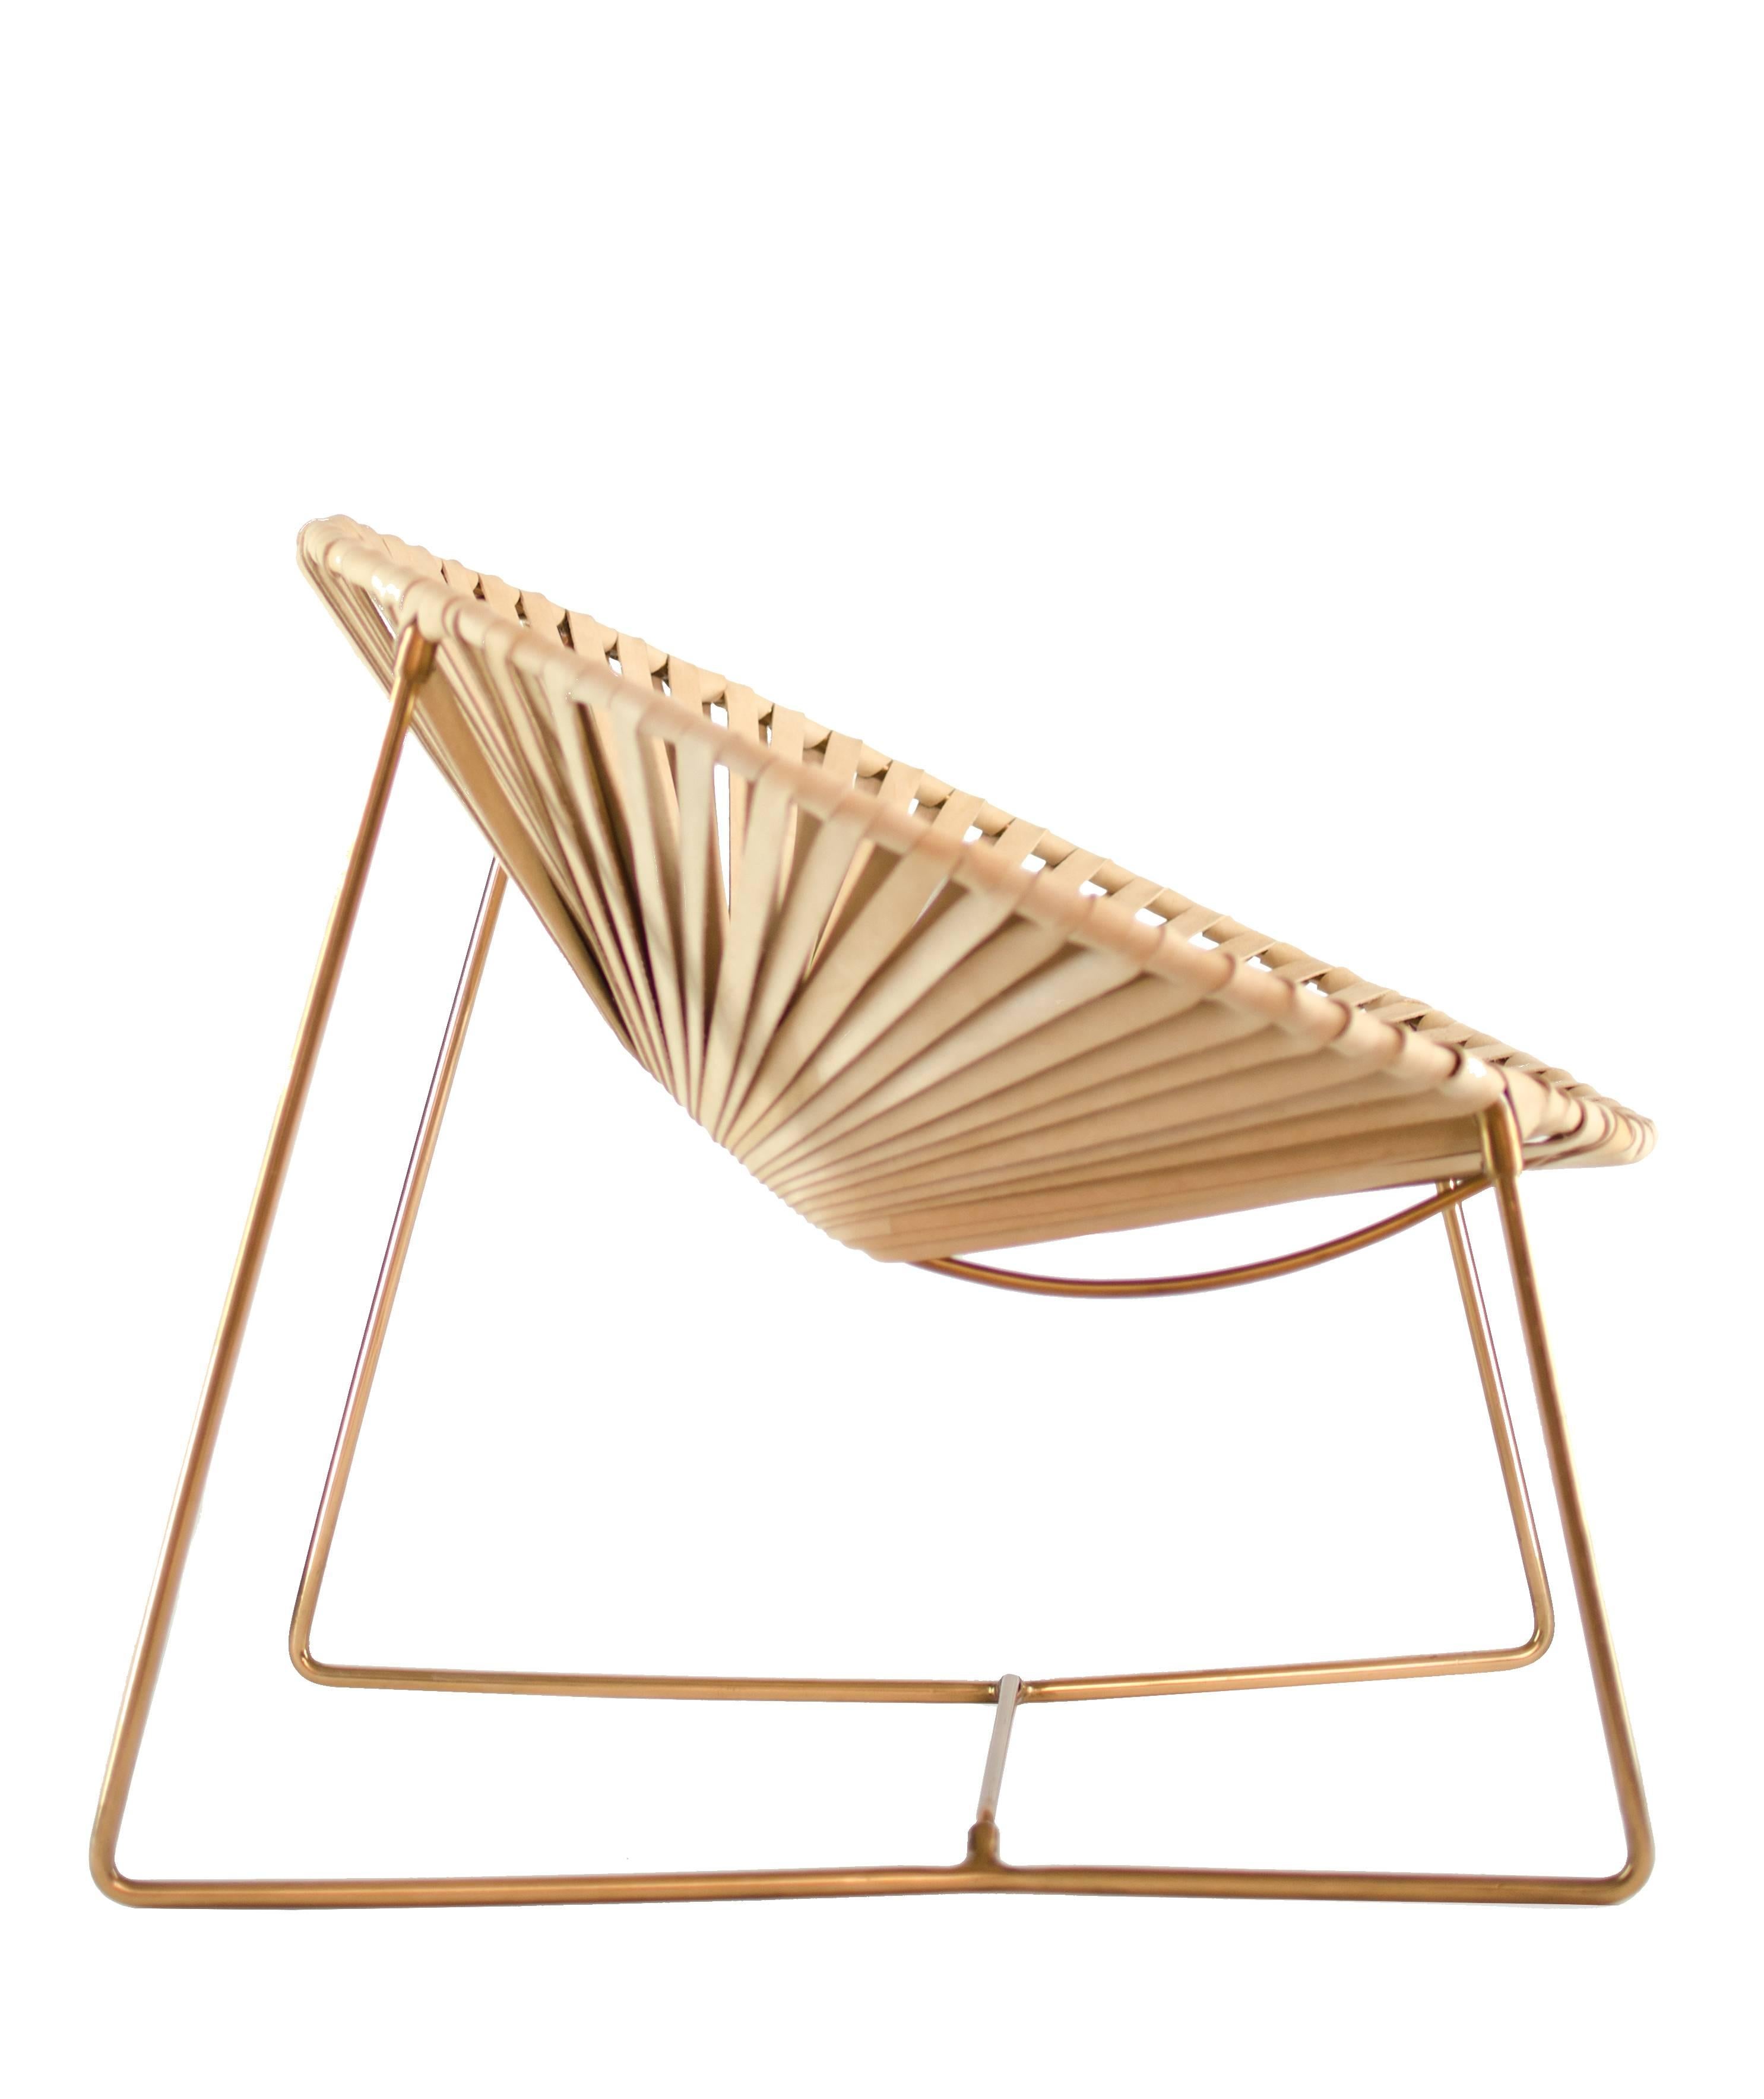 Dieser Stuhl ist eine einzigartige Kreation von Leon Leon Design aus Mexiko-Stadt, eine moderne Version des berühmten Acapulco-Stuhls mit einer breiteren und stärker geneigten Sitzfläche und neuen Materialien.
Er hat eine verkupferte Struktur, die